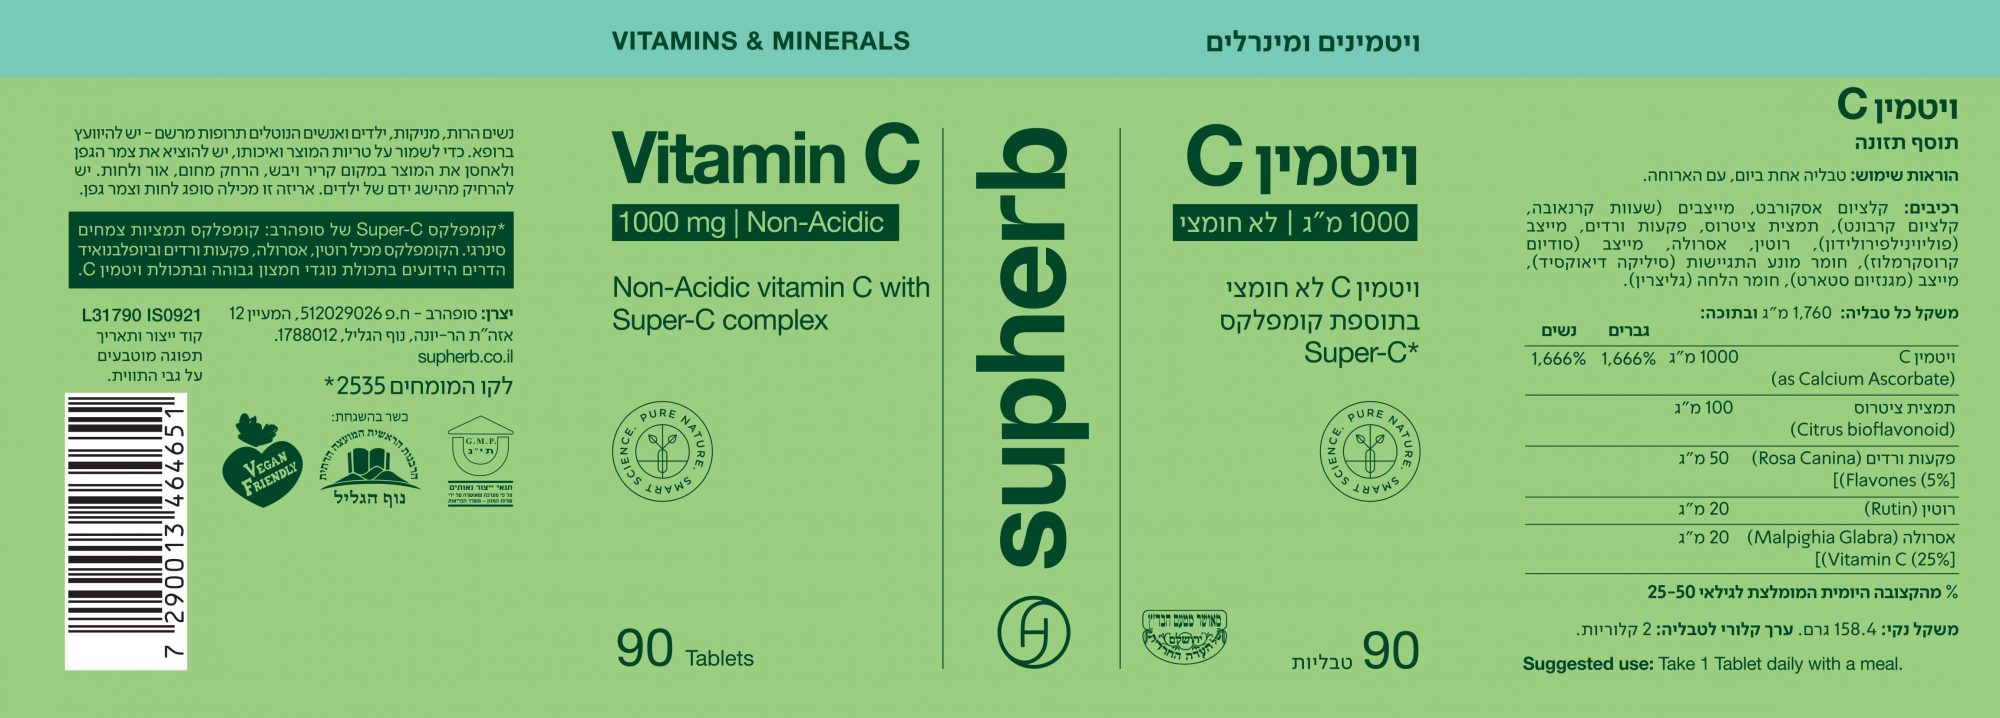 ויטמין C לא חומצי במינון 1000 מ"ג